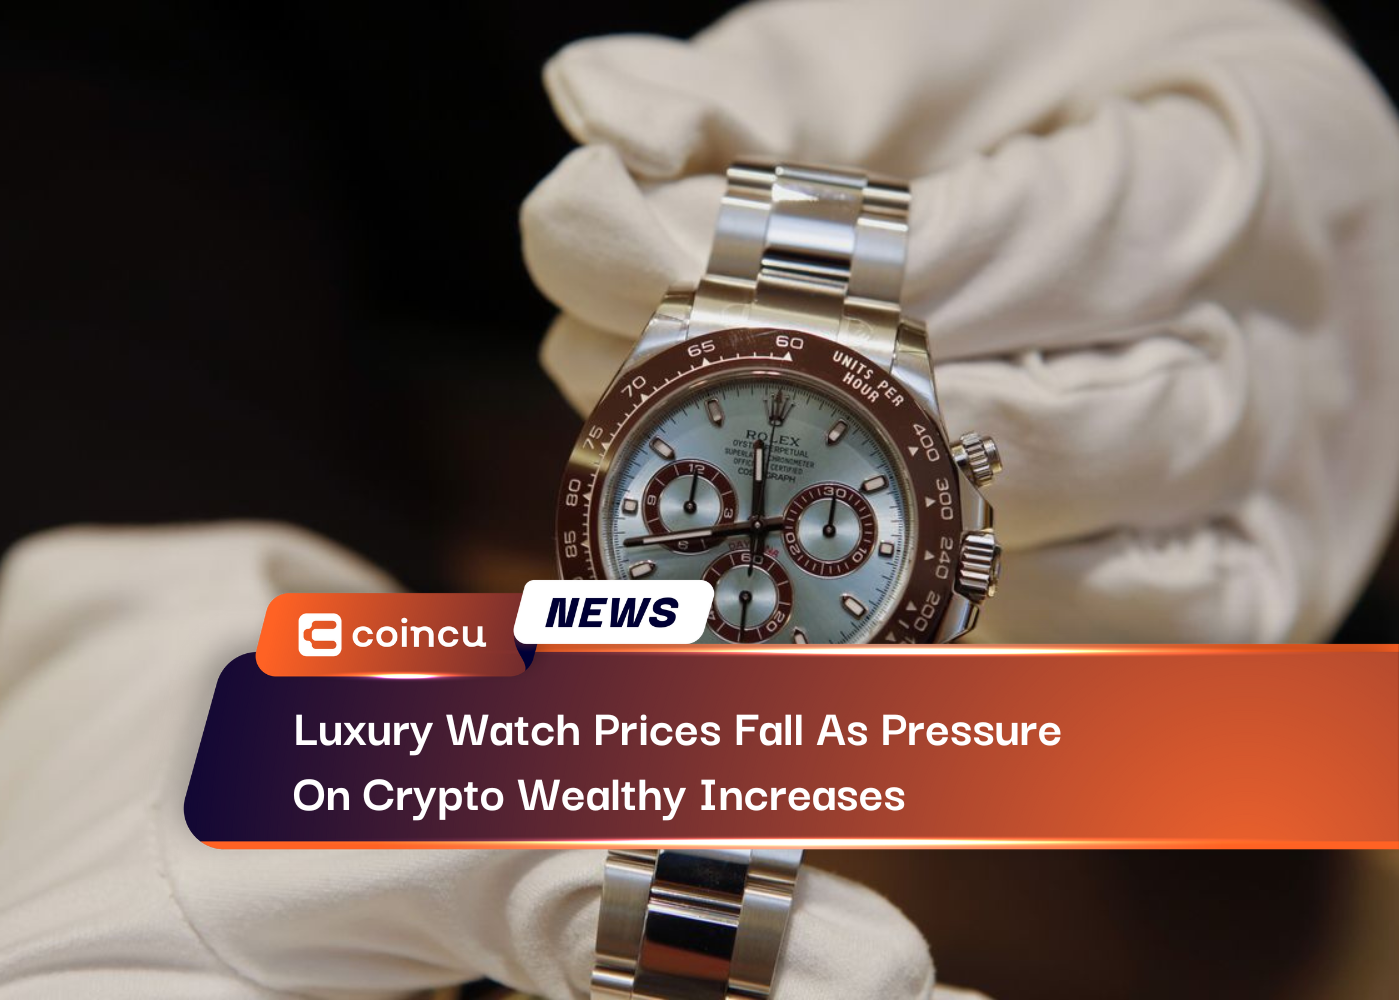 Os preços dos relógios de luxo caem à medida que aumenta a pressão sobre os ricos em criptografia